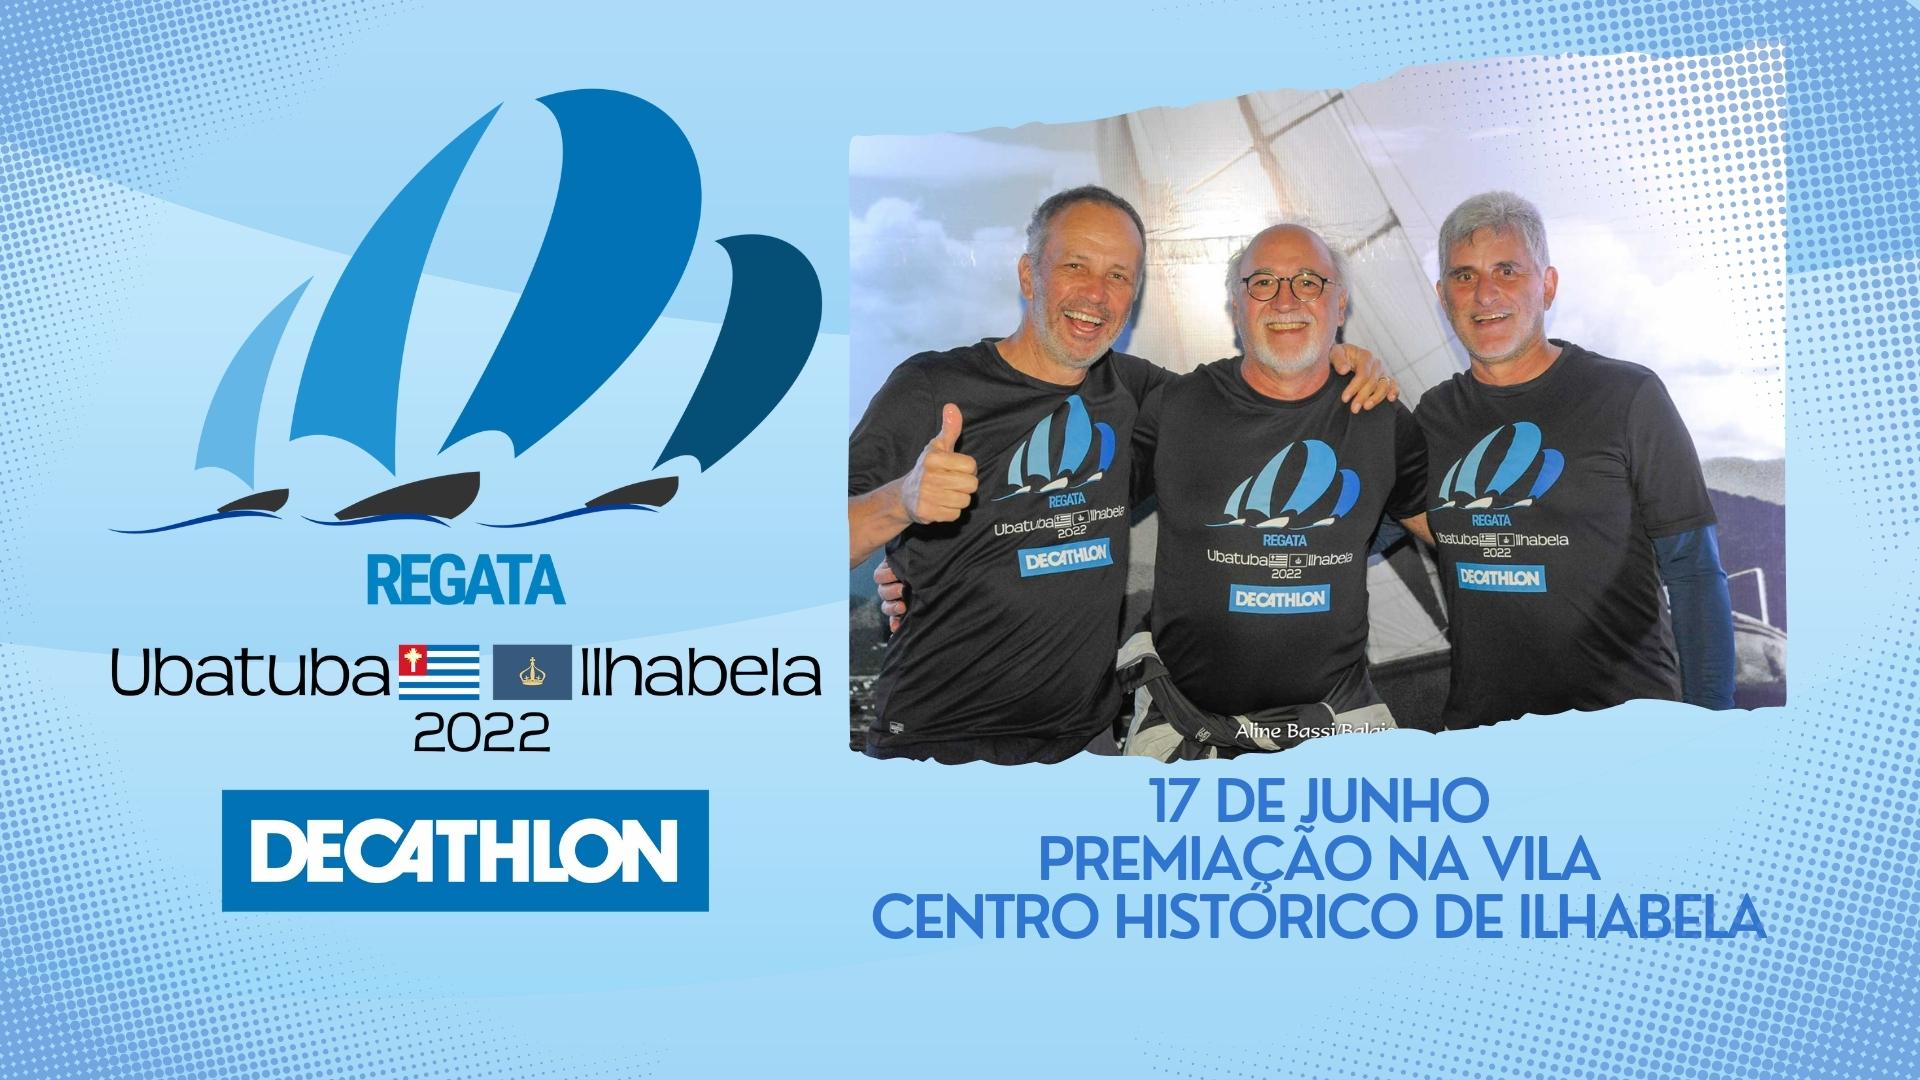 Esquenta da Regata Decathlon Ubatuba-Ilhabela! em São Paulo - Sympla